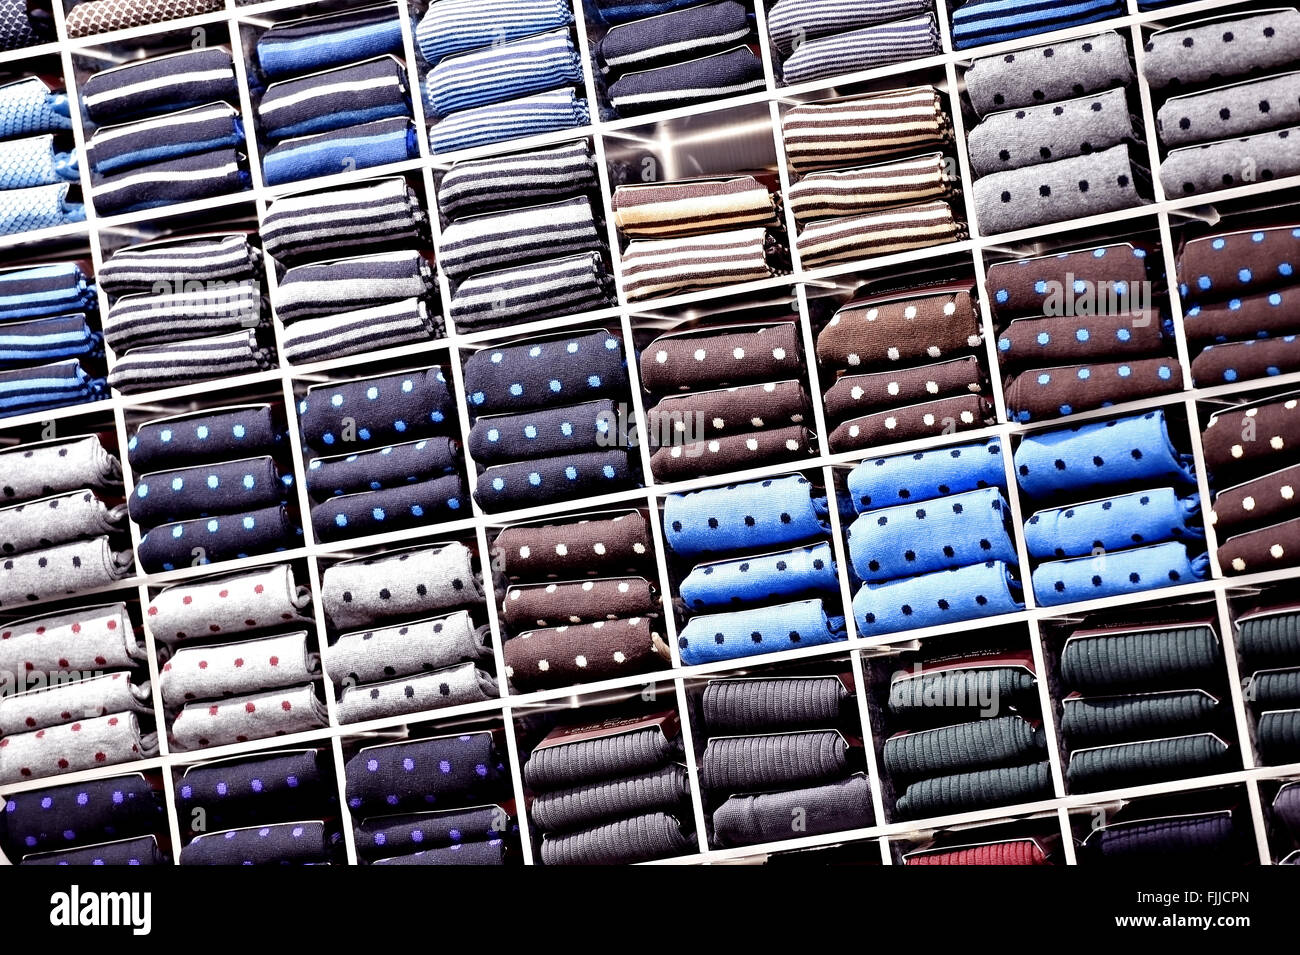 Cravates de soie différents paniers sur des étagères dans un magasin Banque D'Images